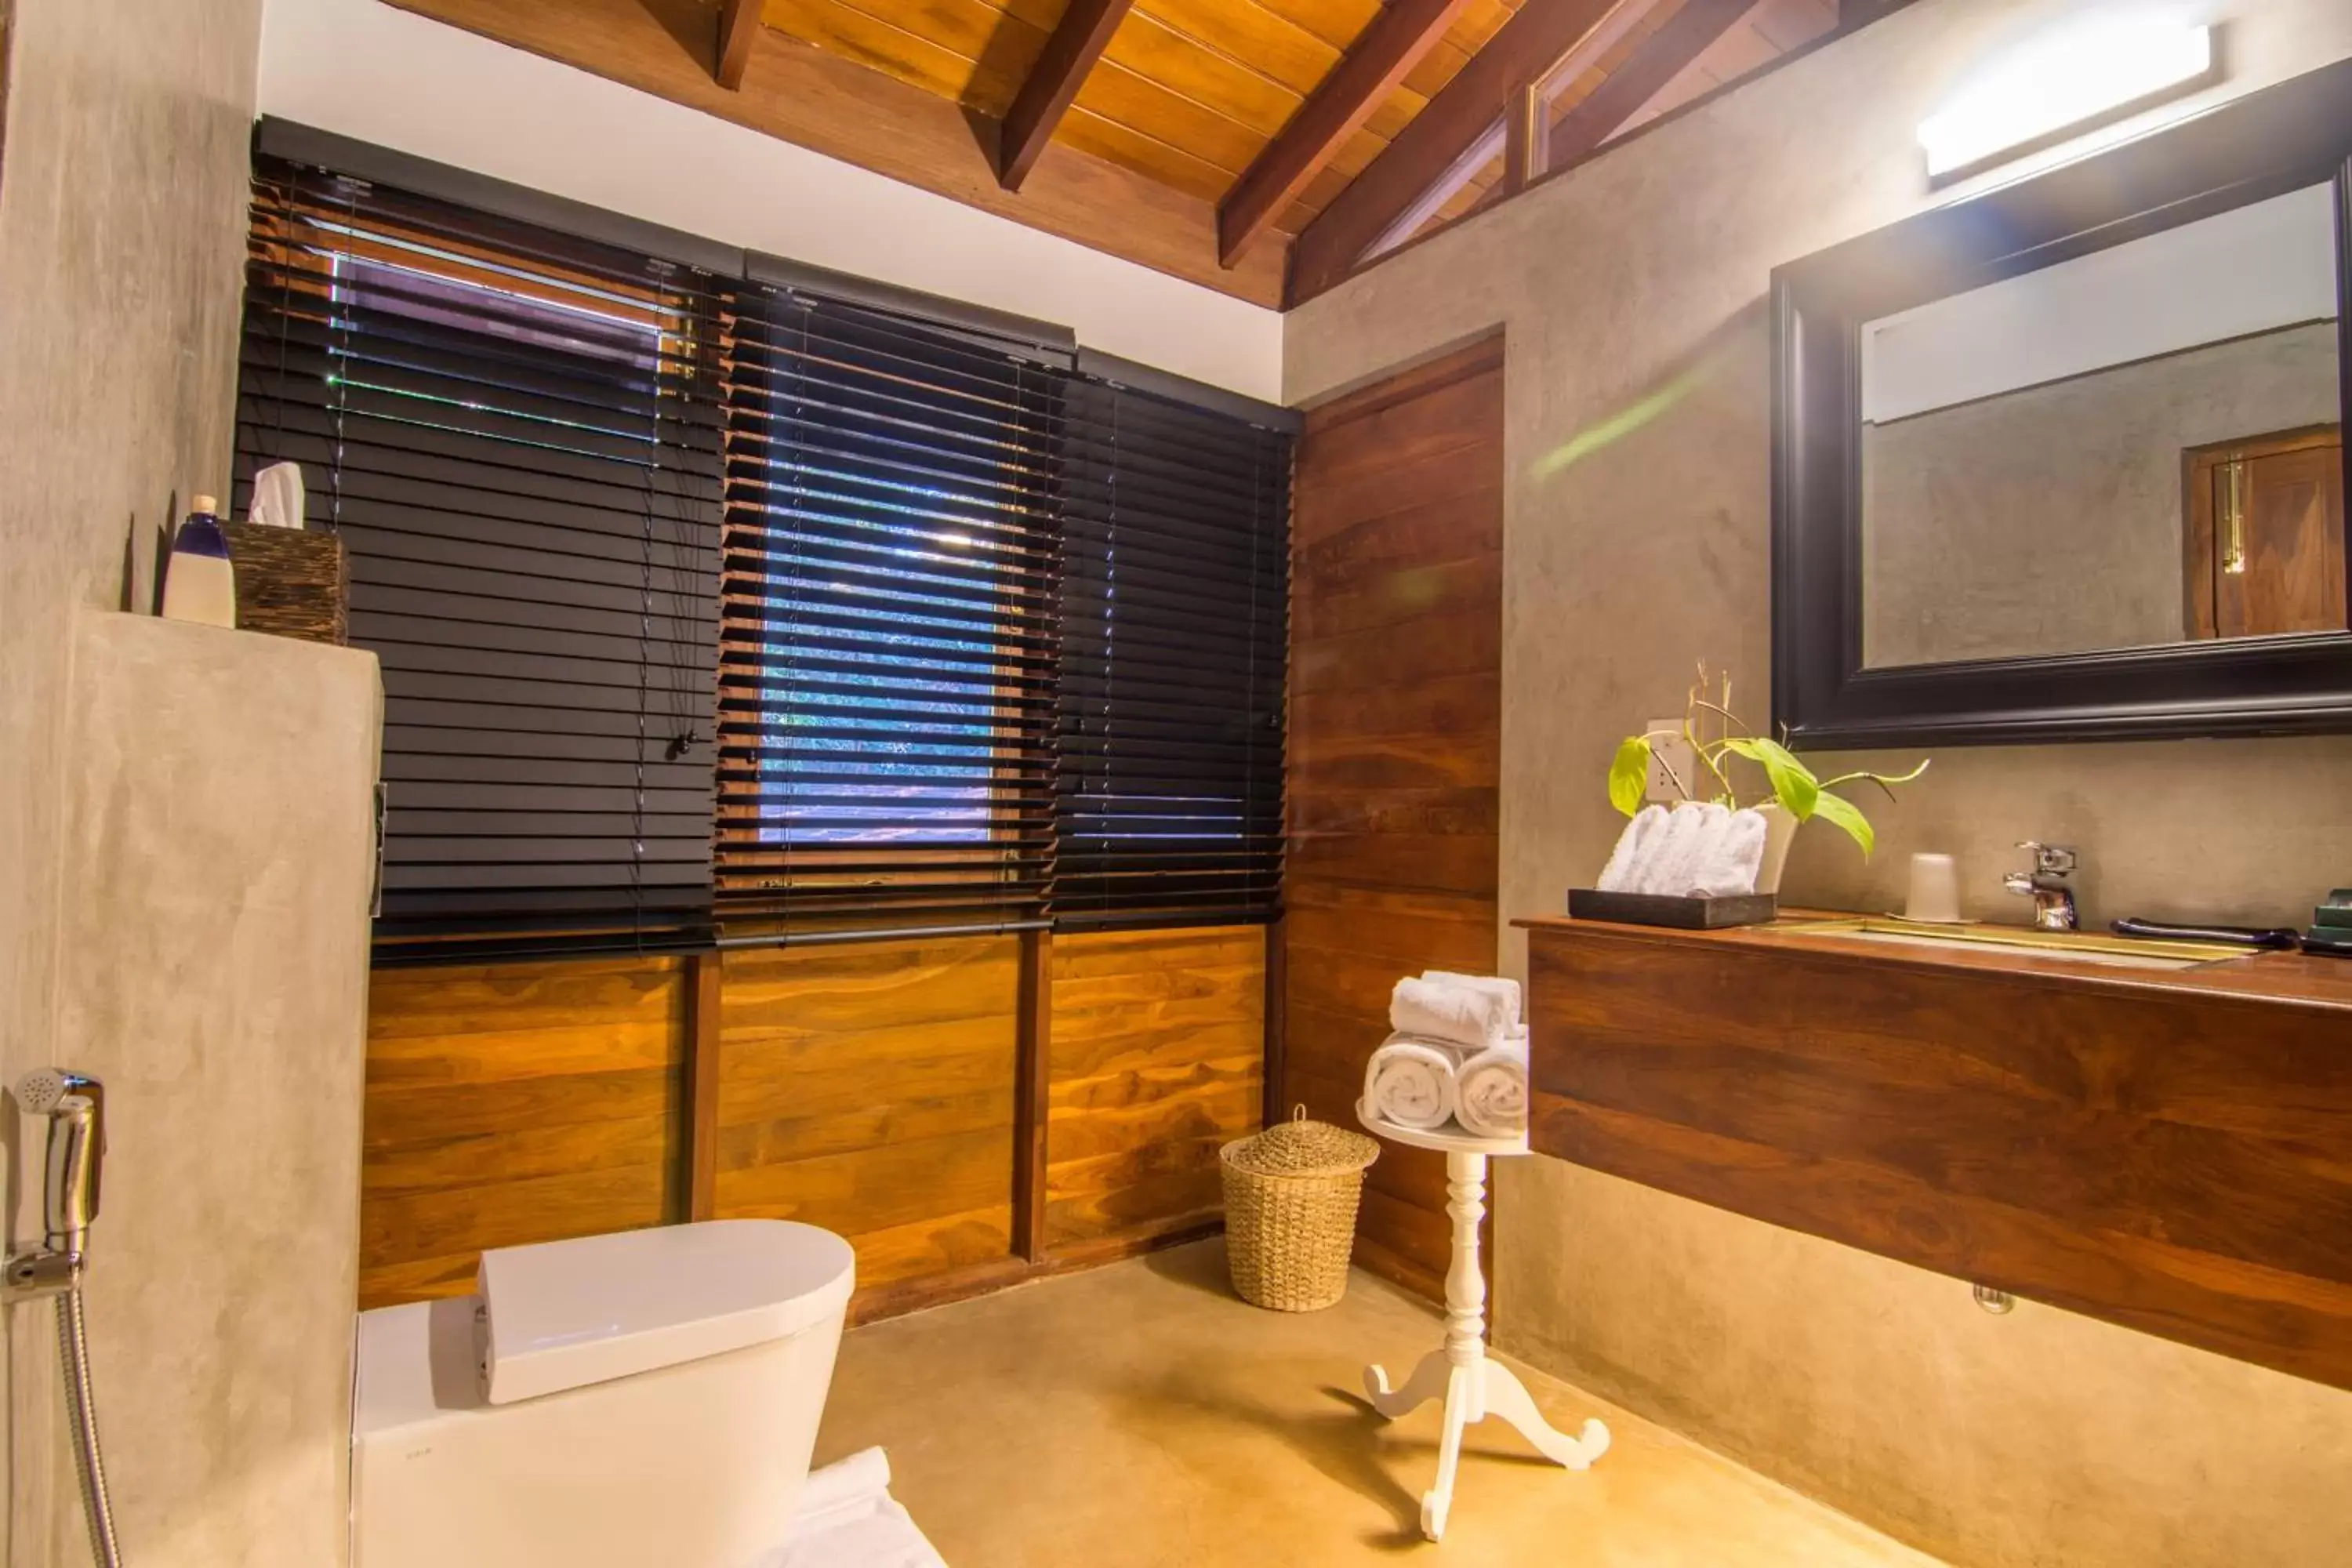 Bathroom in Kings Pavilion Luxury Hotel